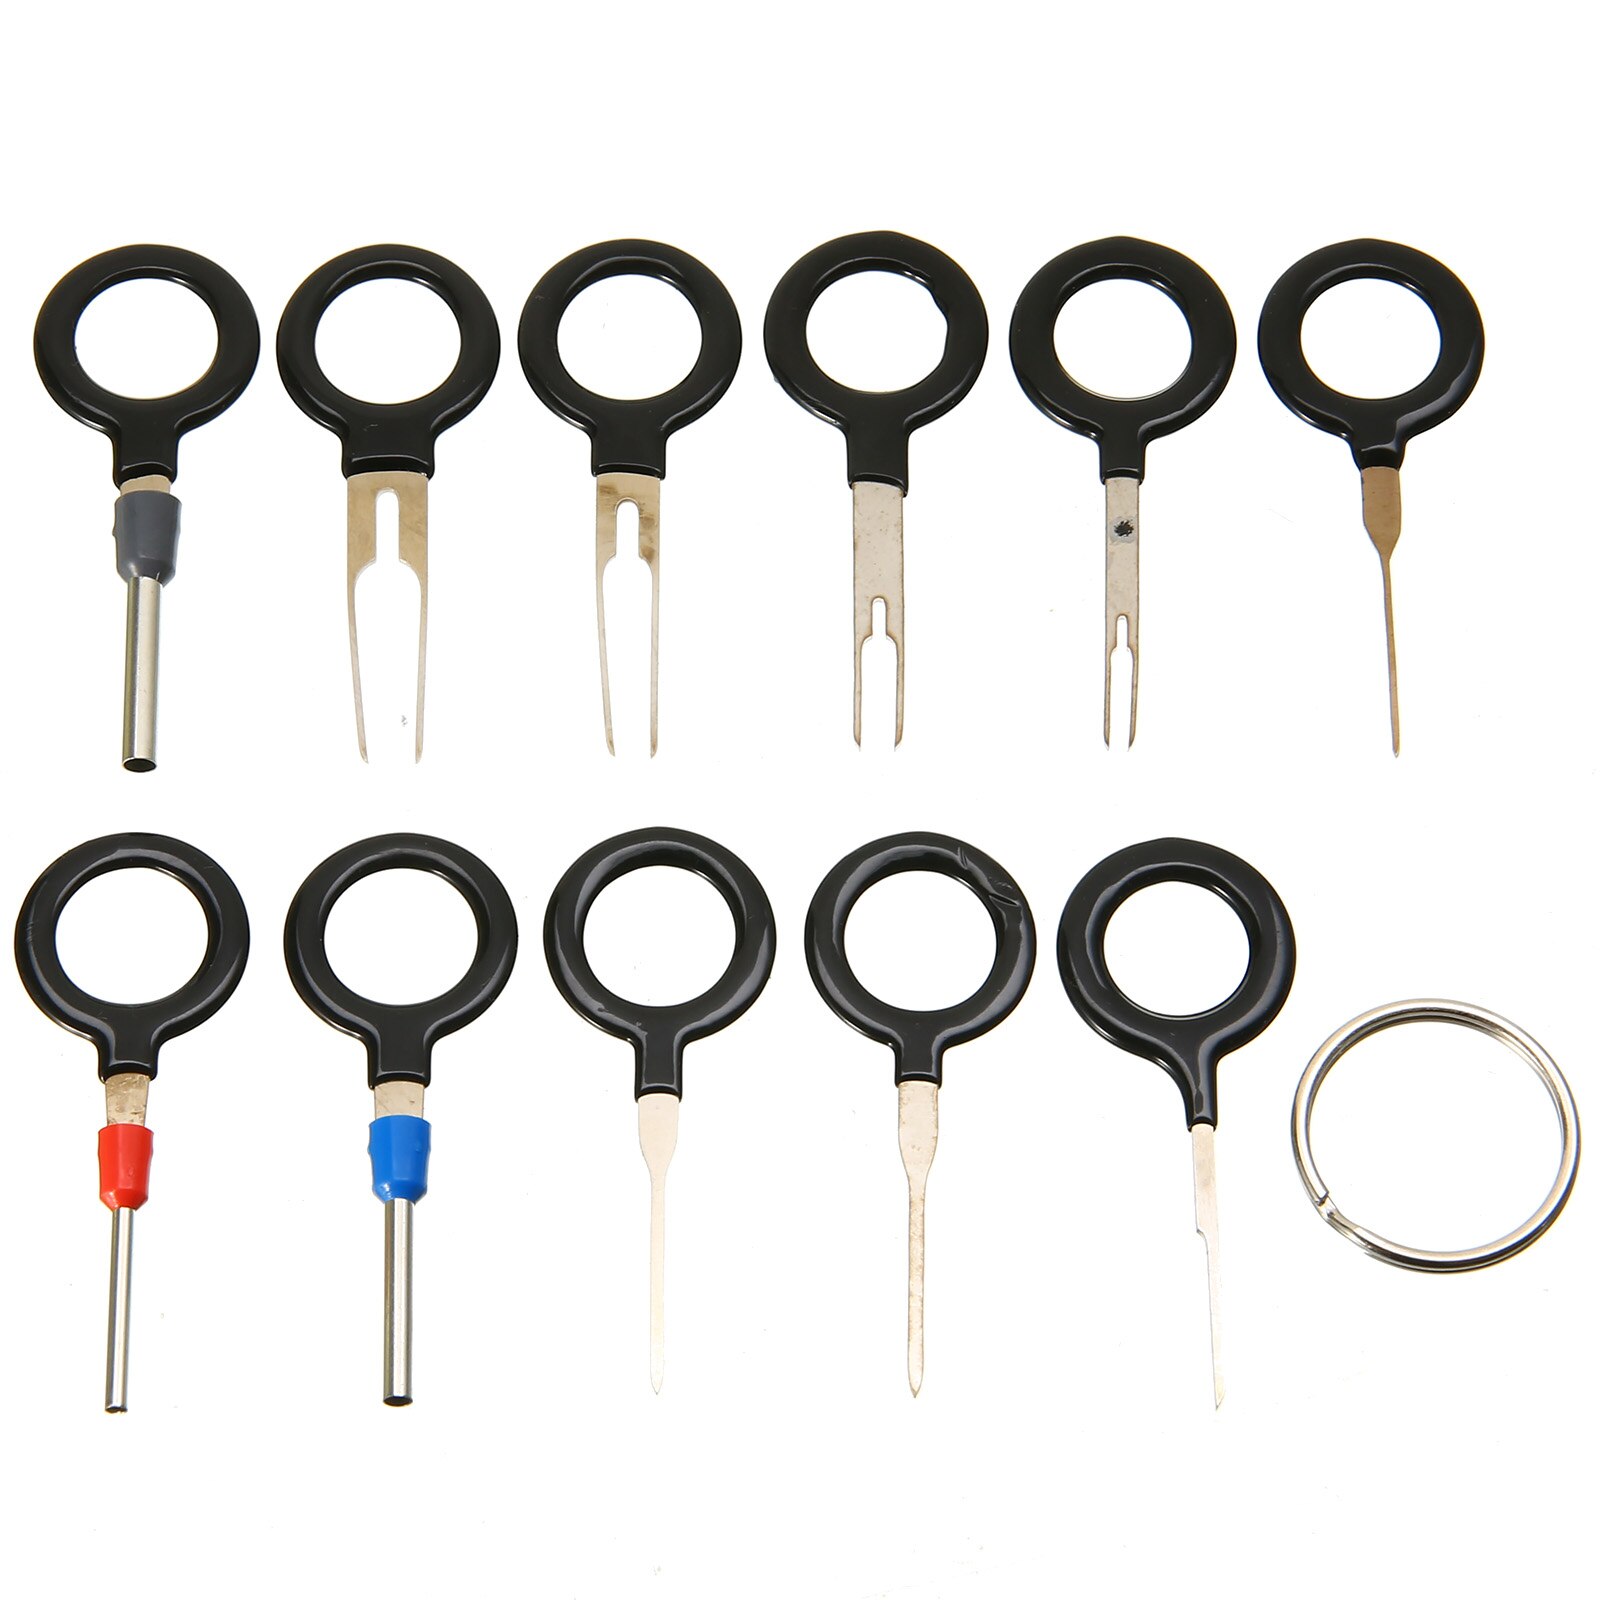 11 stk / sæt terminal fjernelsesværktøj nøgle pin ledning crimpstik pin udtrækkersæt elektriske nøgleværktøjer til bil